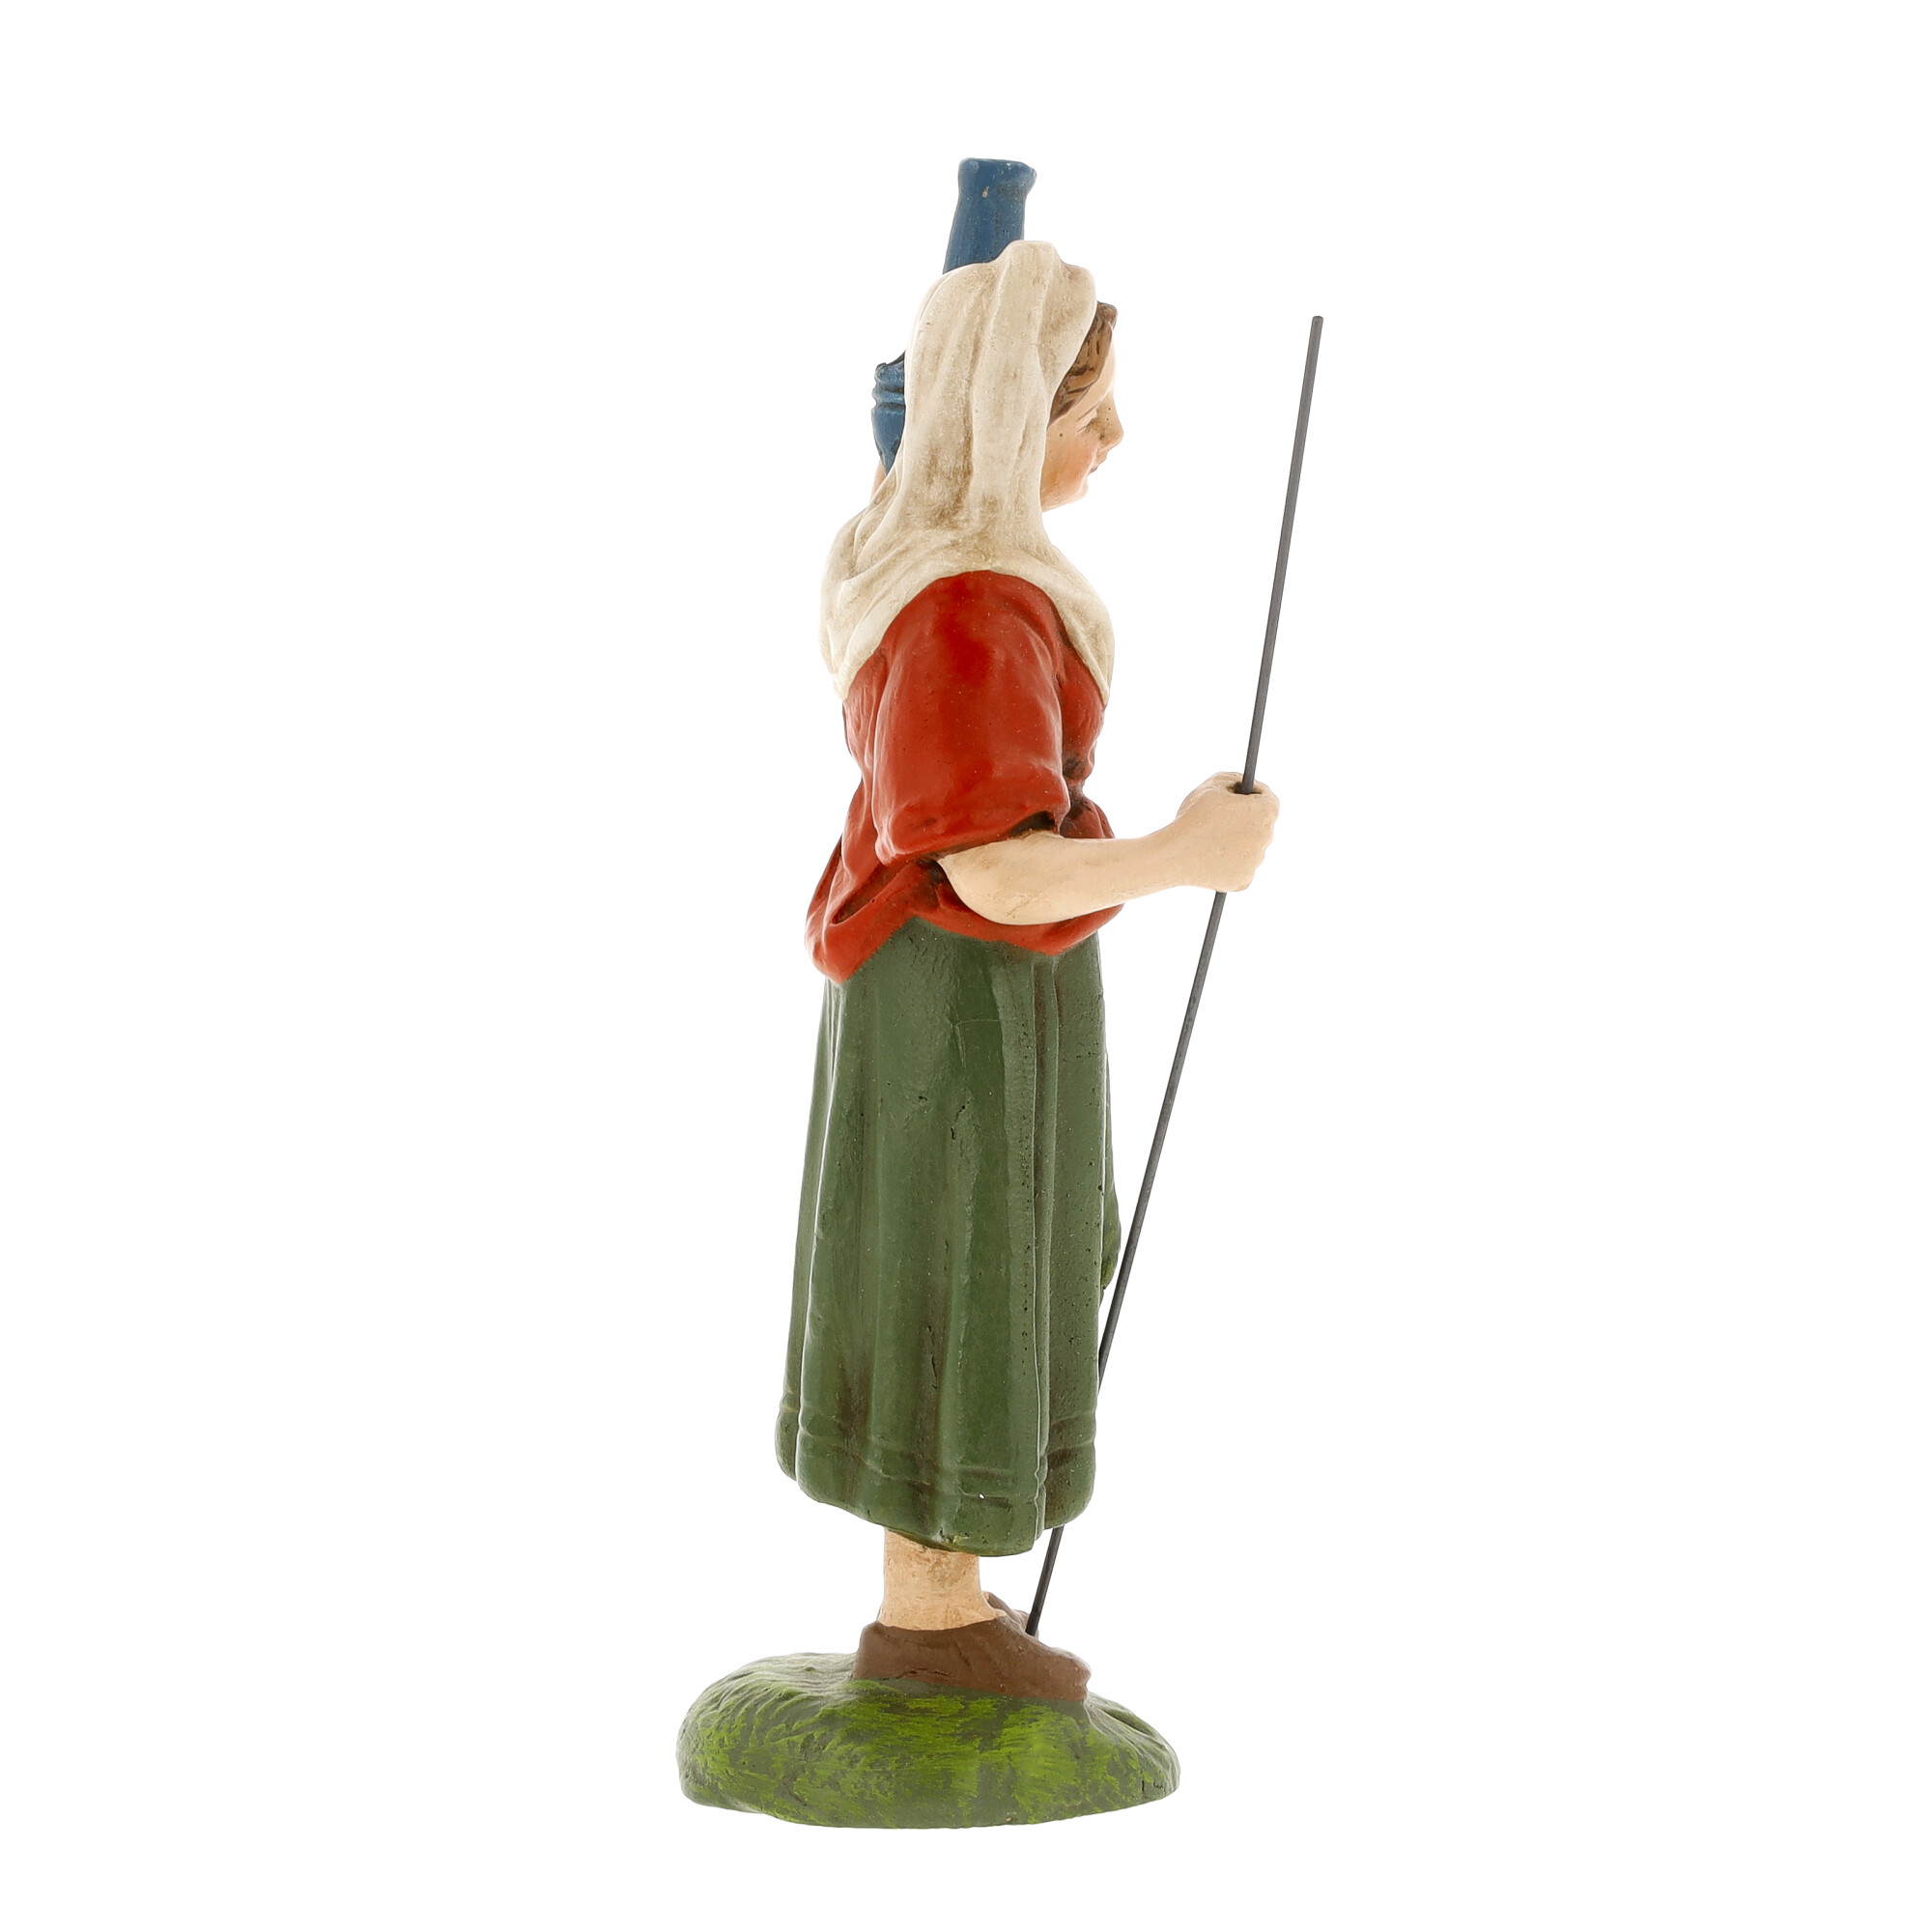 Hirtin mit Krug, zu 11cm Krippenfiguren - Original MAROLIN® - Krippenfigur für Ihre Weihnachtskrippe - Made in Germany